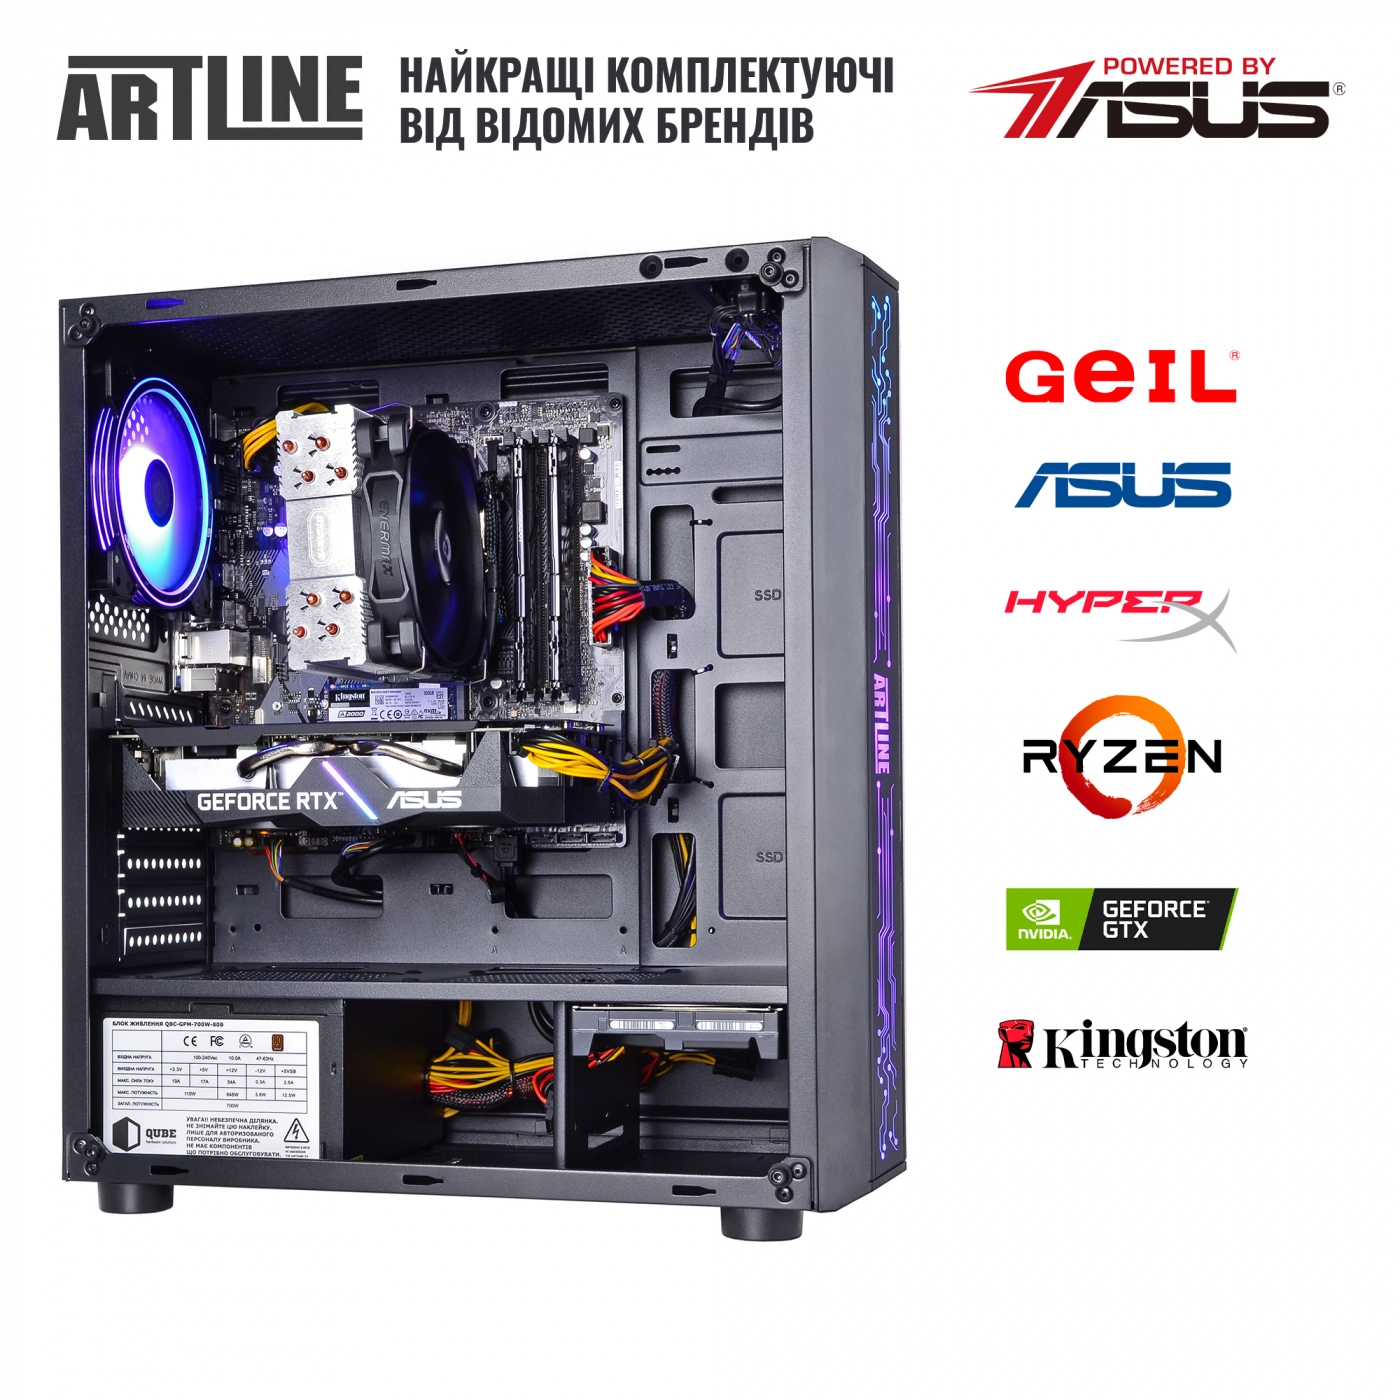 Купить Компьютер ARTLINE Gaming X68v15 - фото 7